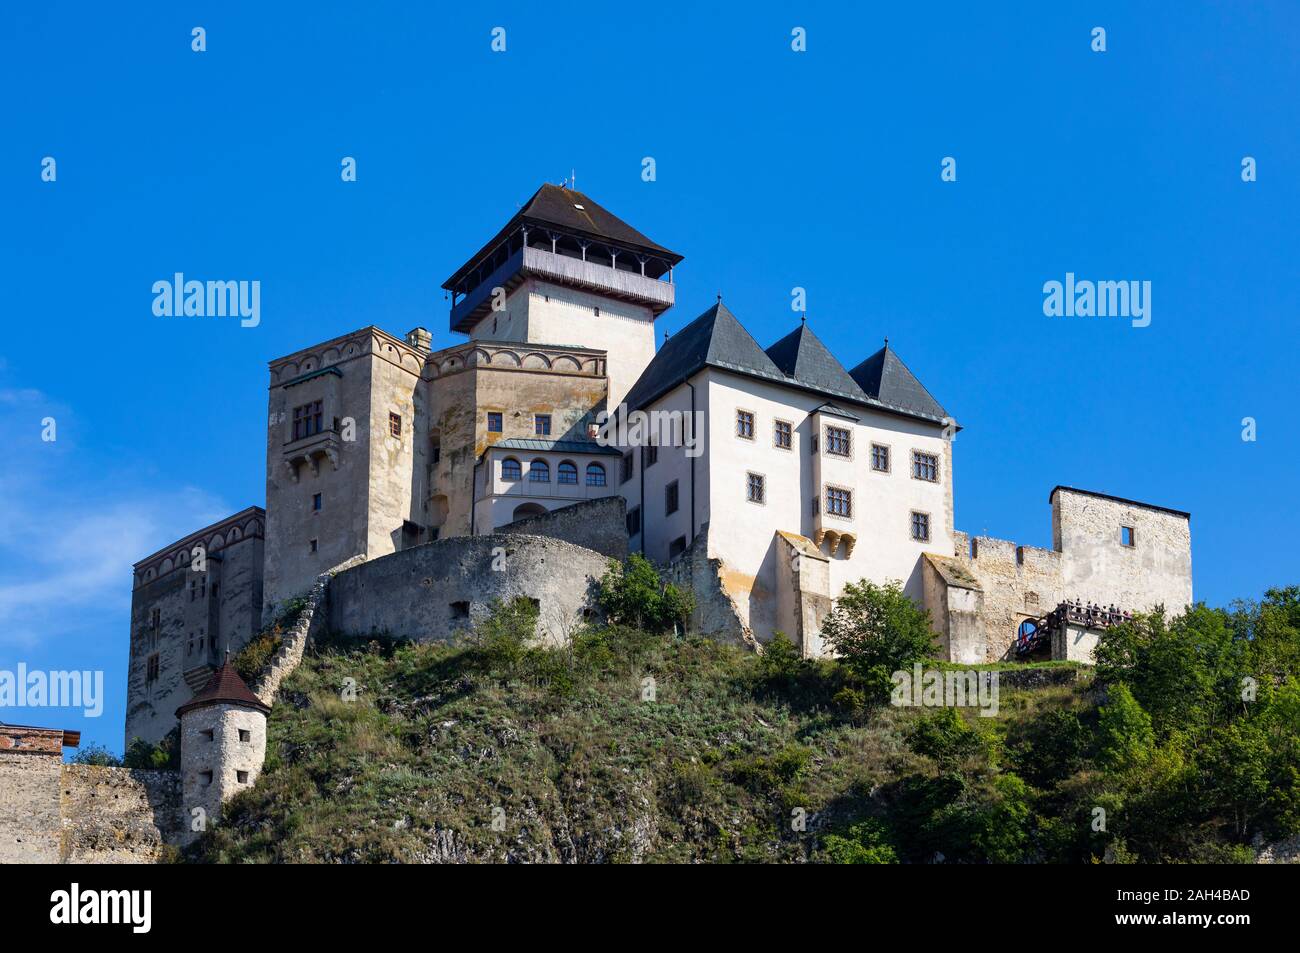 Slovakia, Trencin, Trencin Castle against clear sky Stock Photo